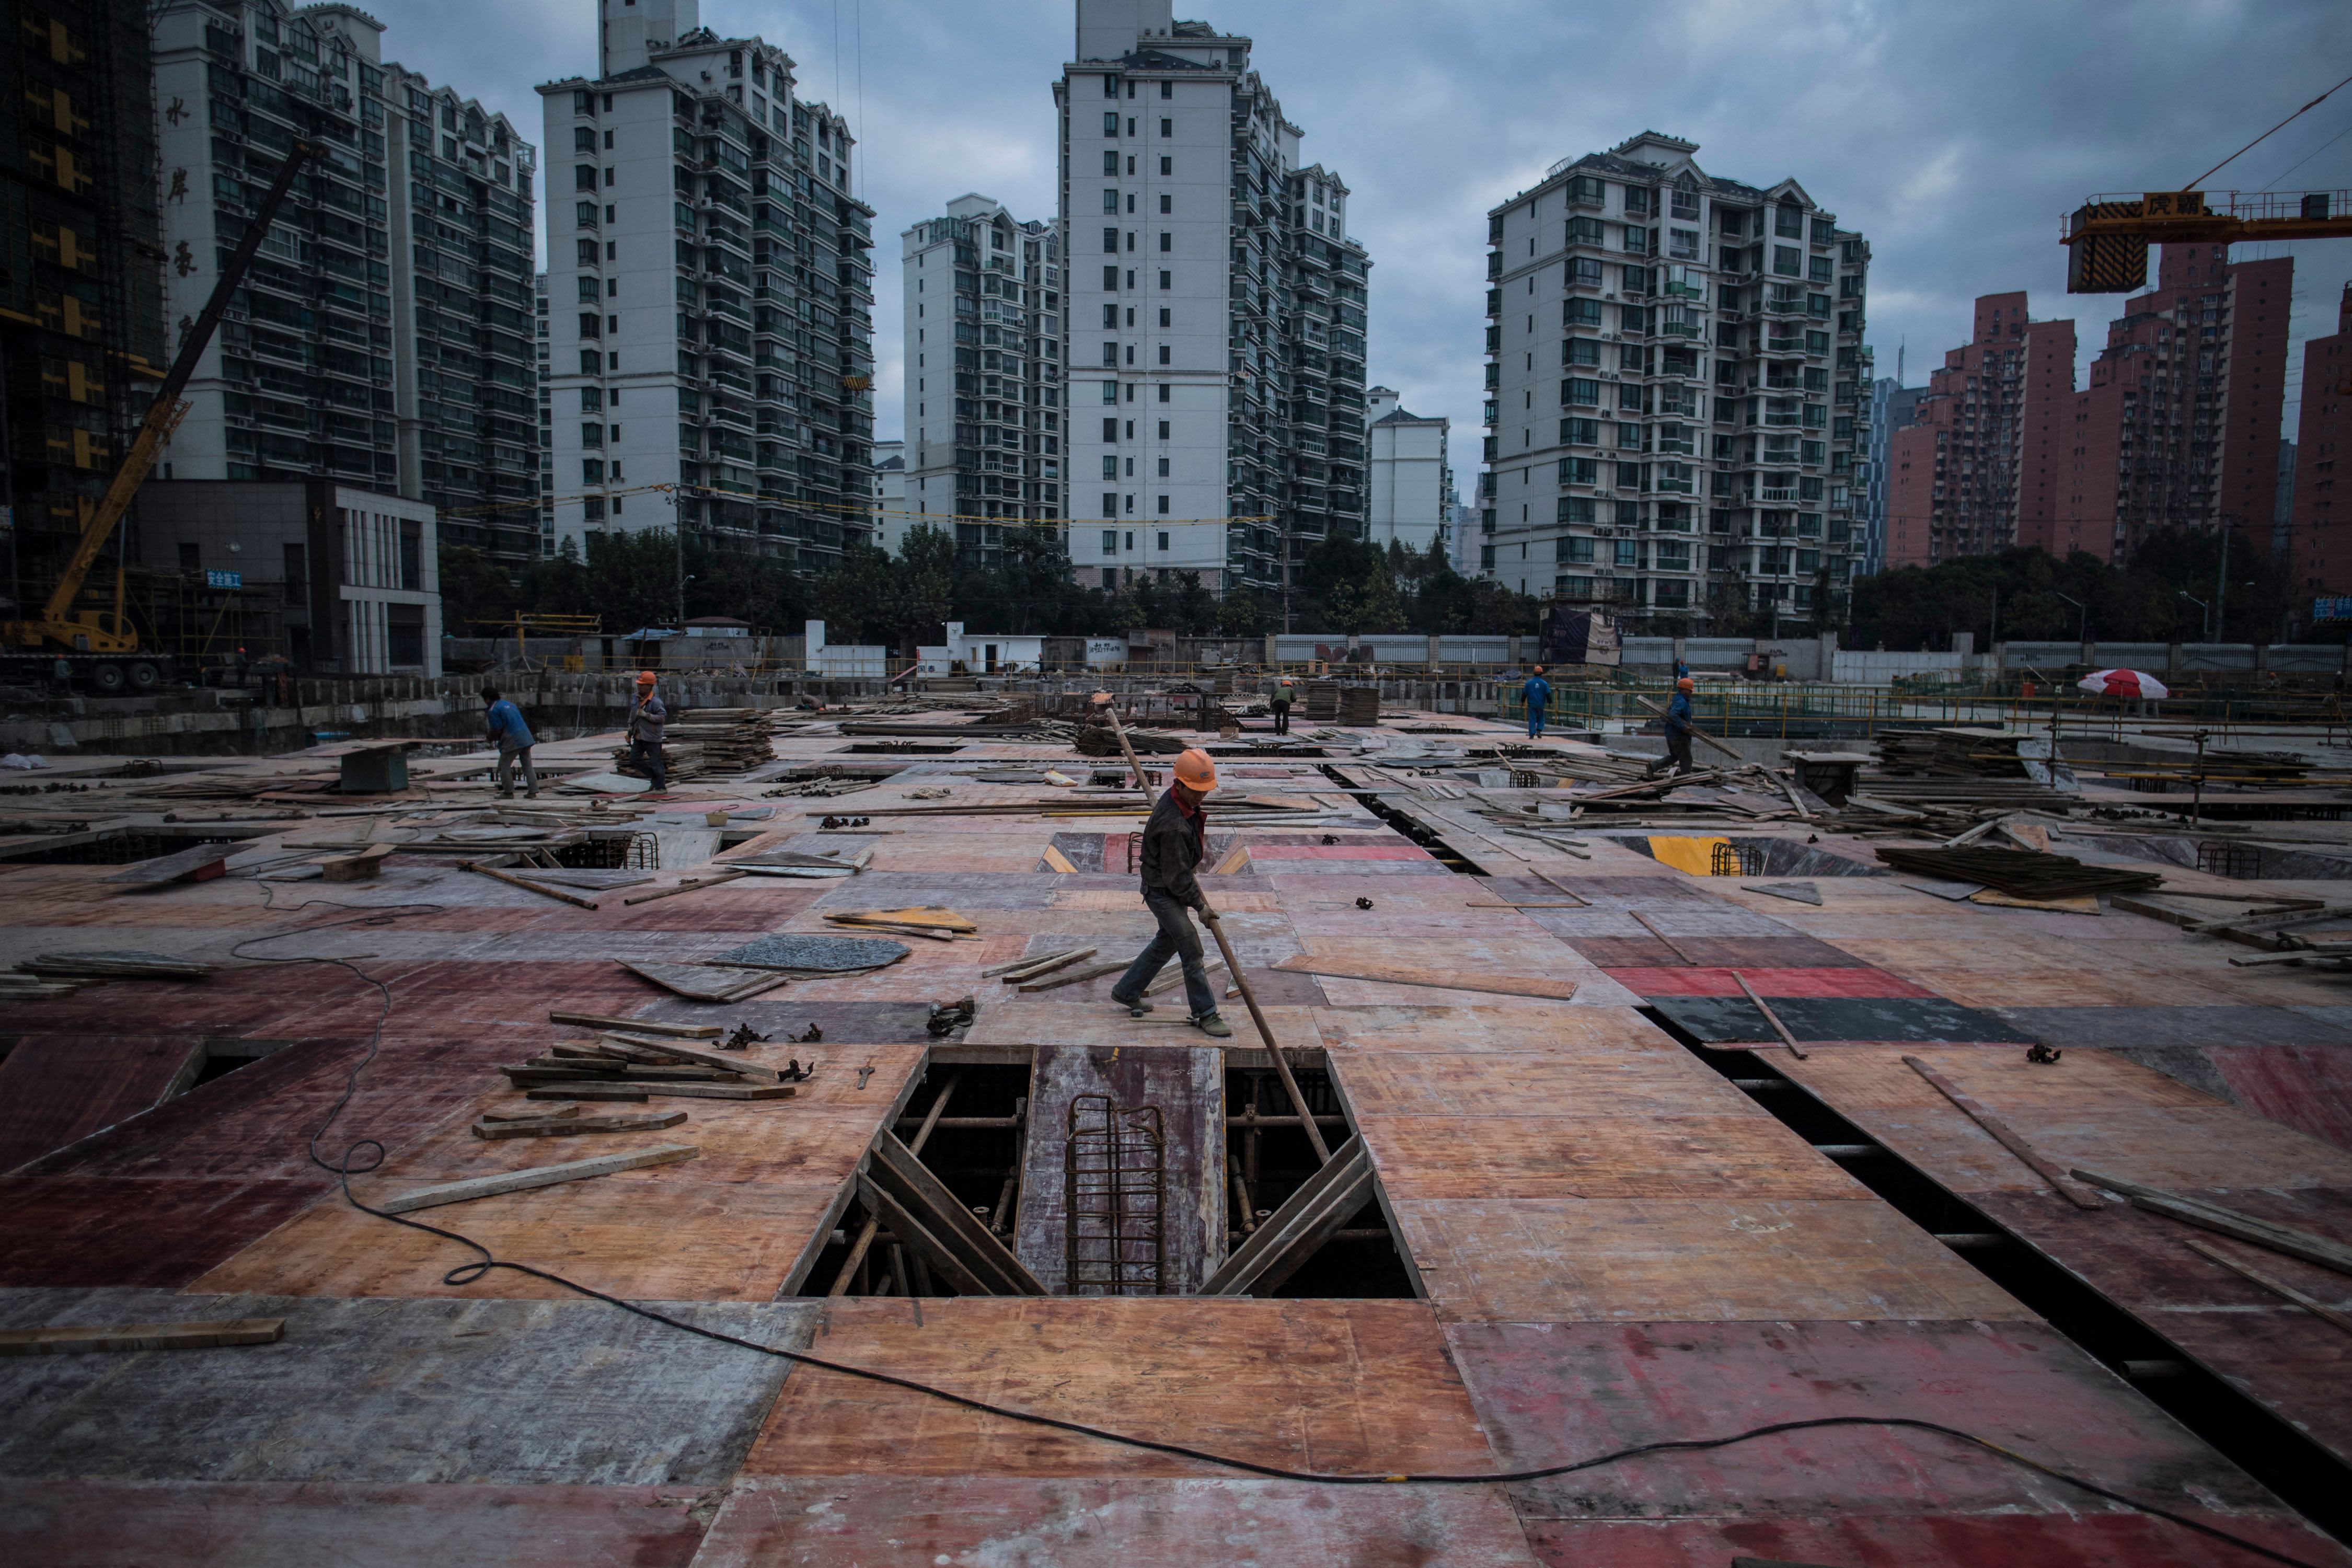 Chinas Immobilienmarkt wurde von Zahlungsunfähigkeitsängsten erschüttert, und Country Garden verschreckte die Anleger